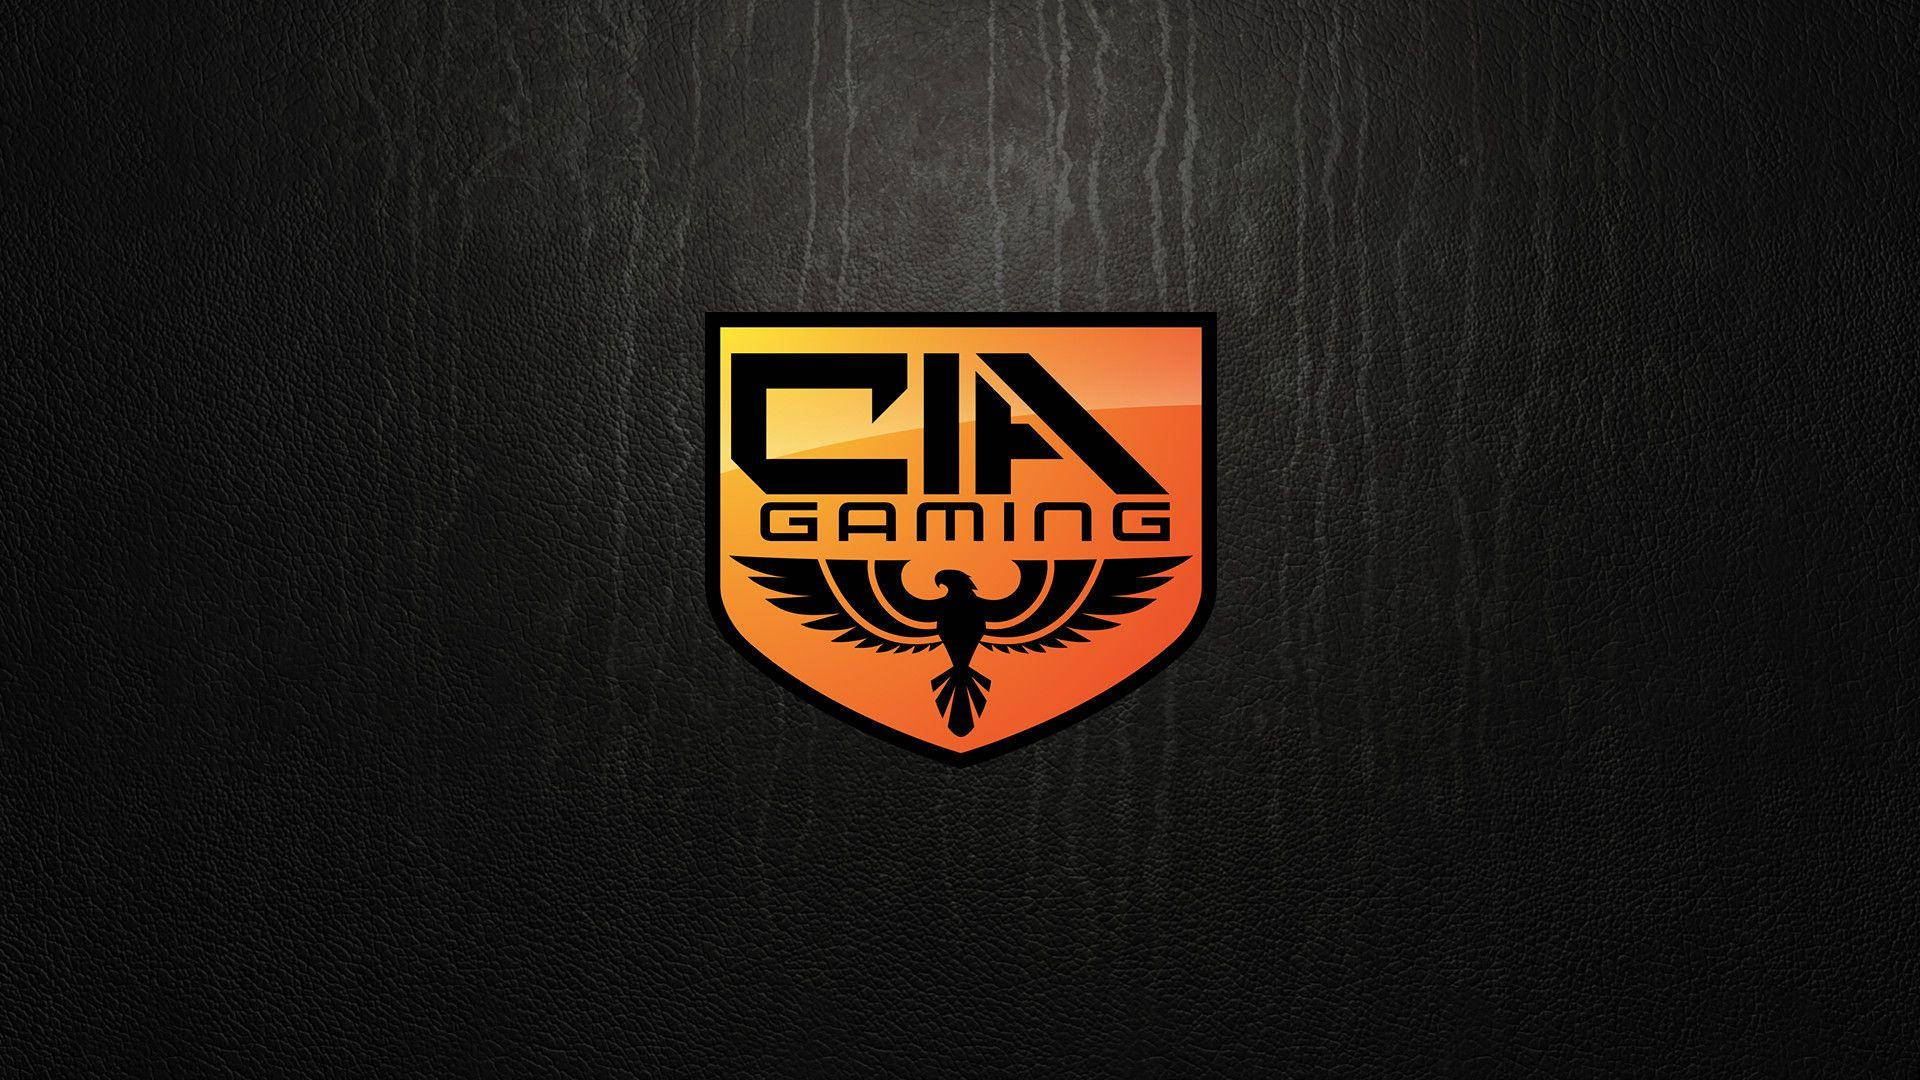 Cia Logo With Eagle Sign